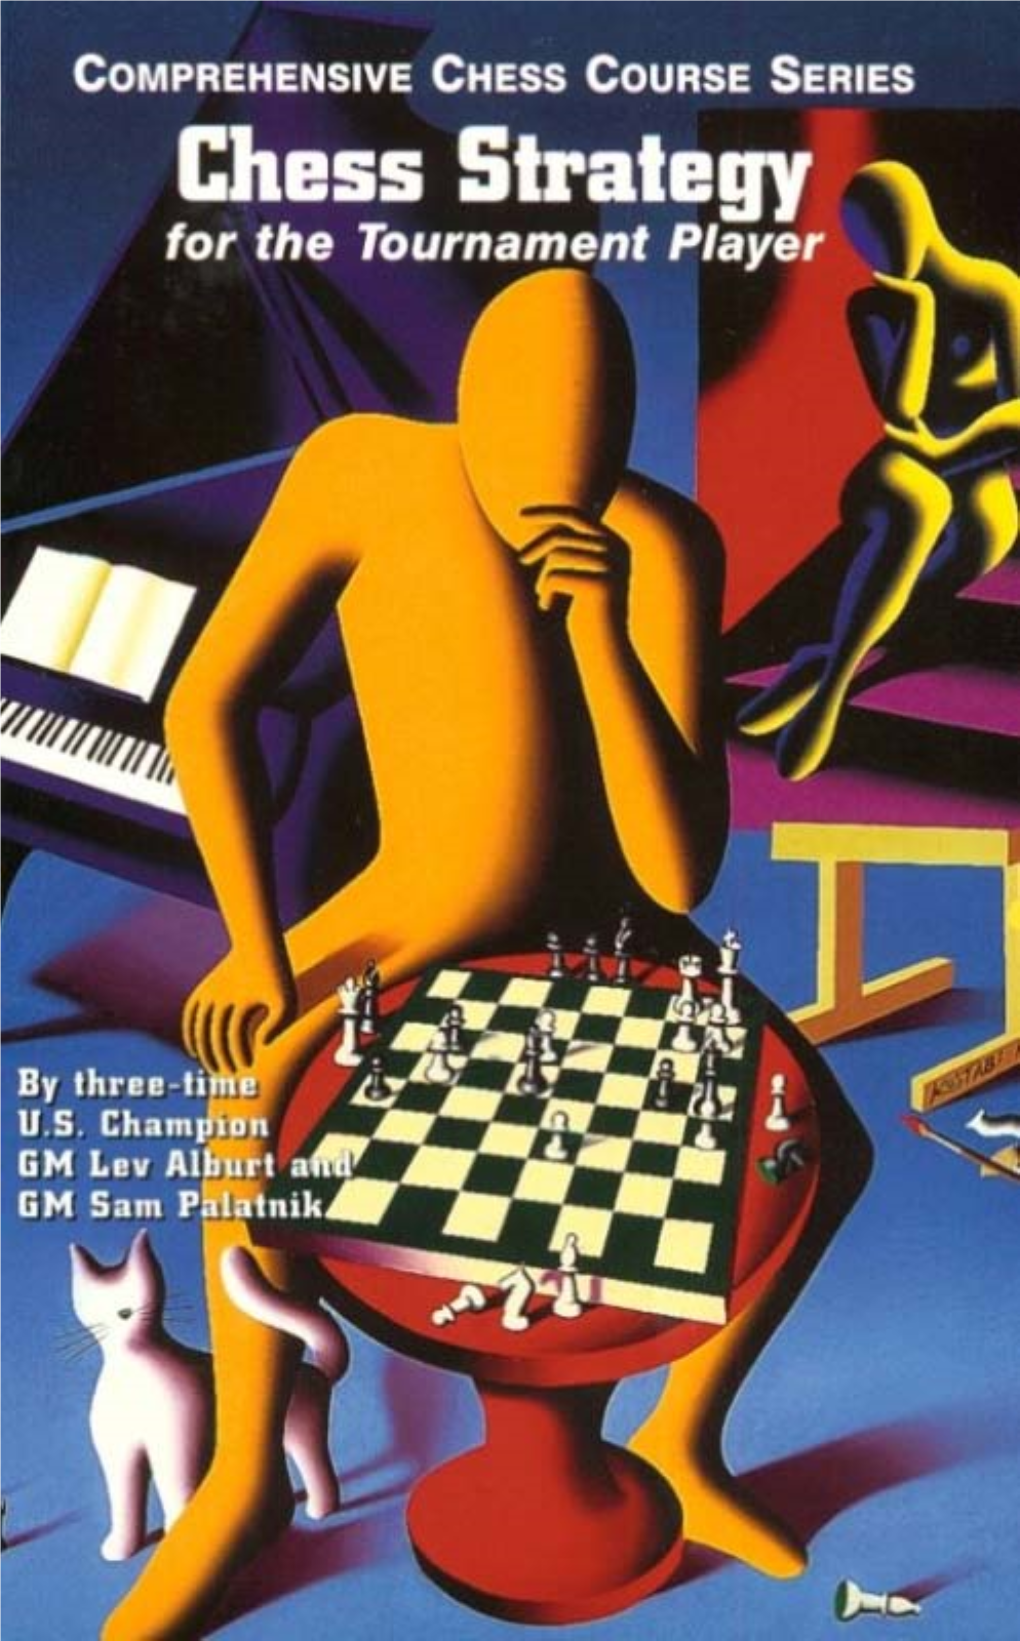 Alburt L. Palatnik S. - Chess Strategy for the Tournament Player.Pdf